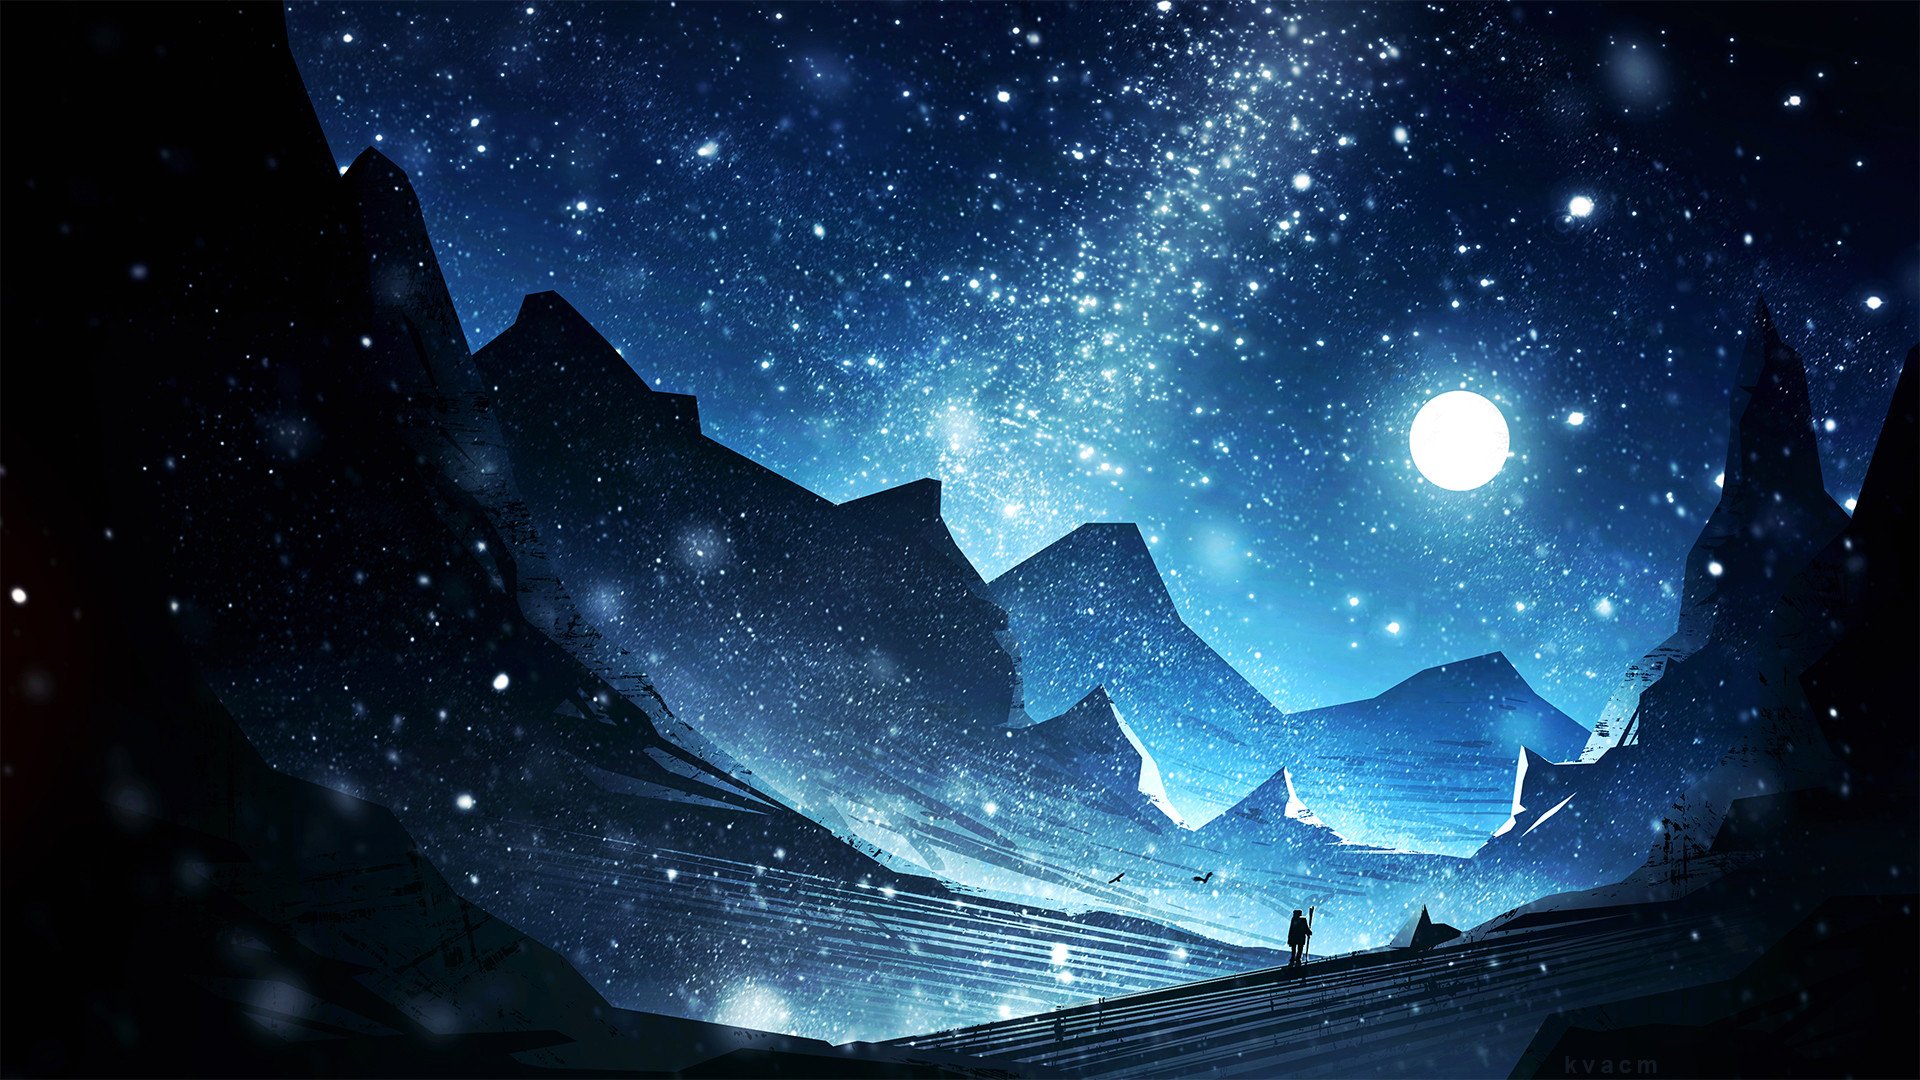 免费照片月夜山中充满魔力的画面